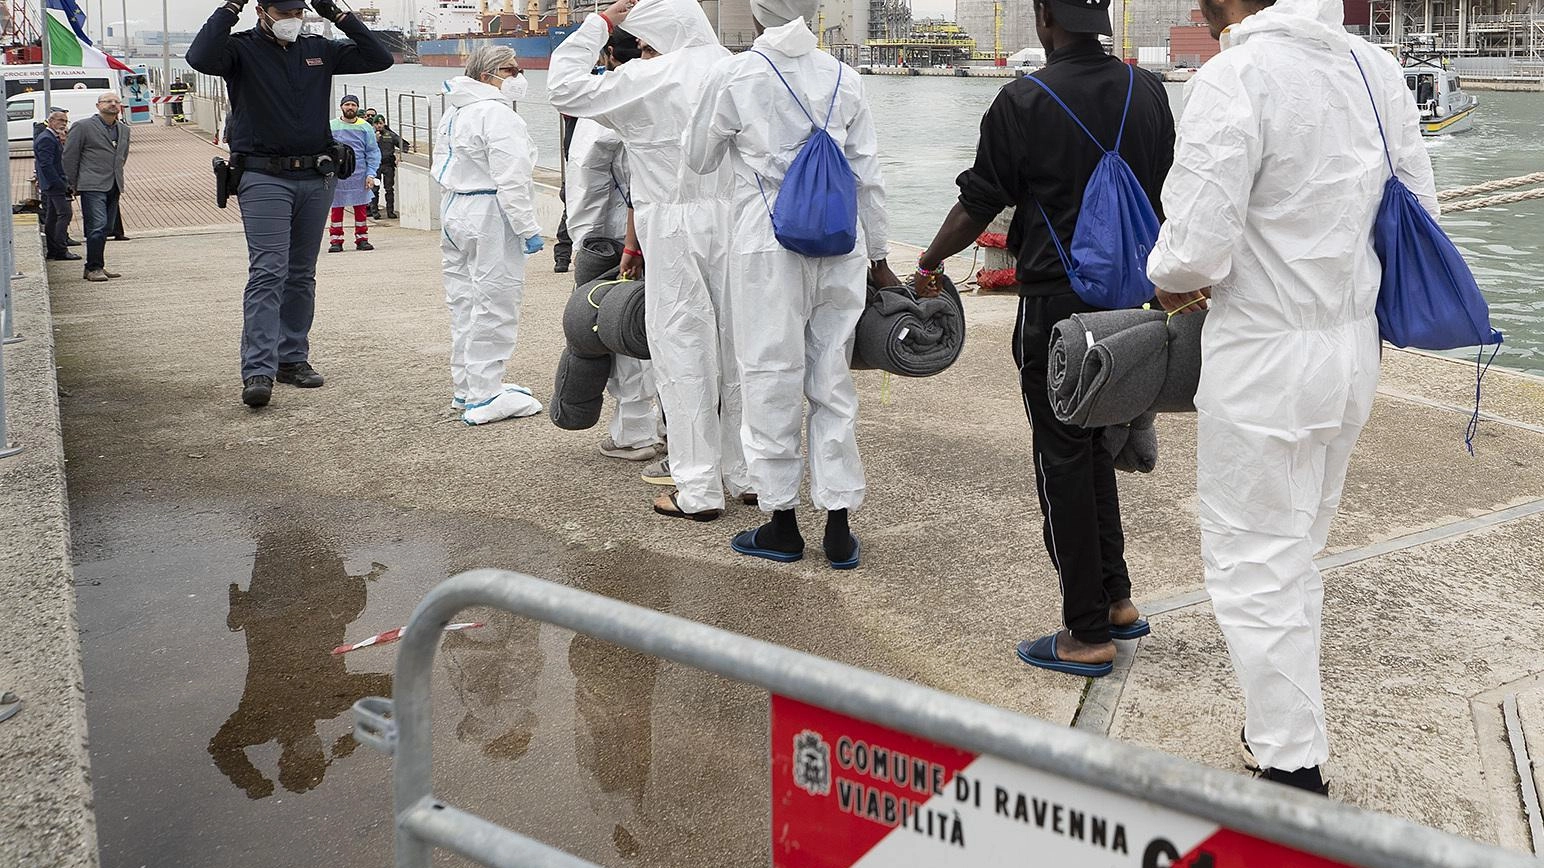 Migranti al porto di Ravenna. Via i due presunti scafisti